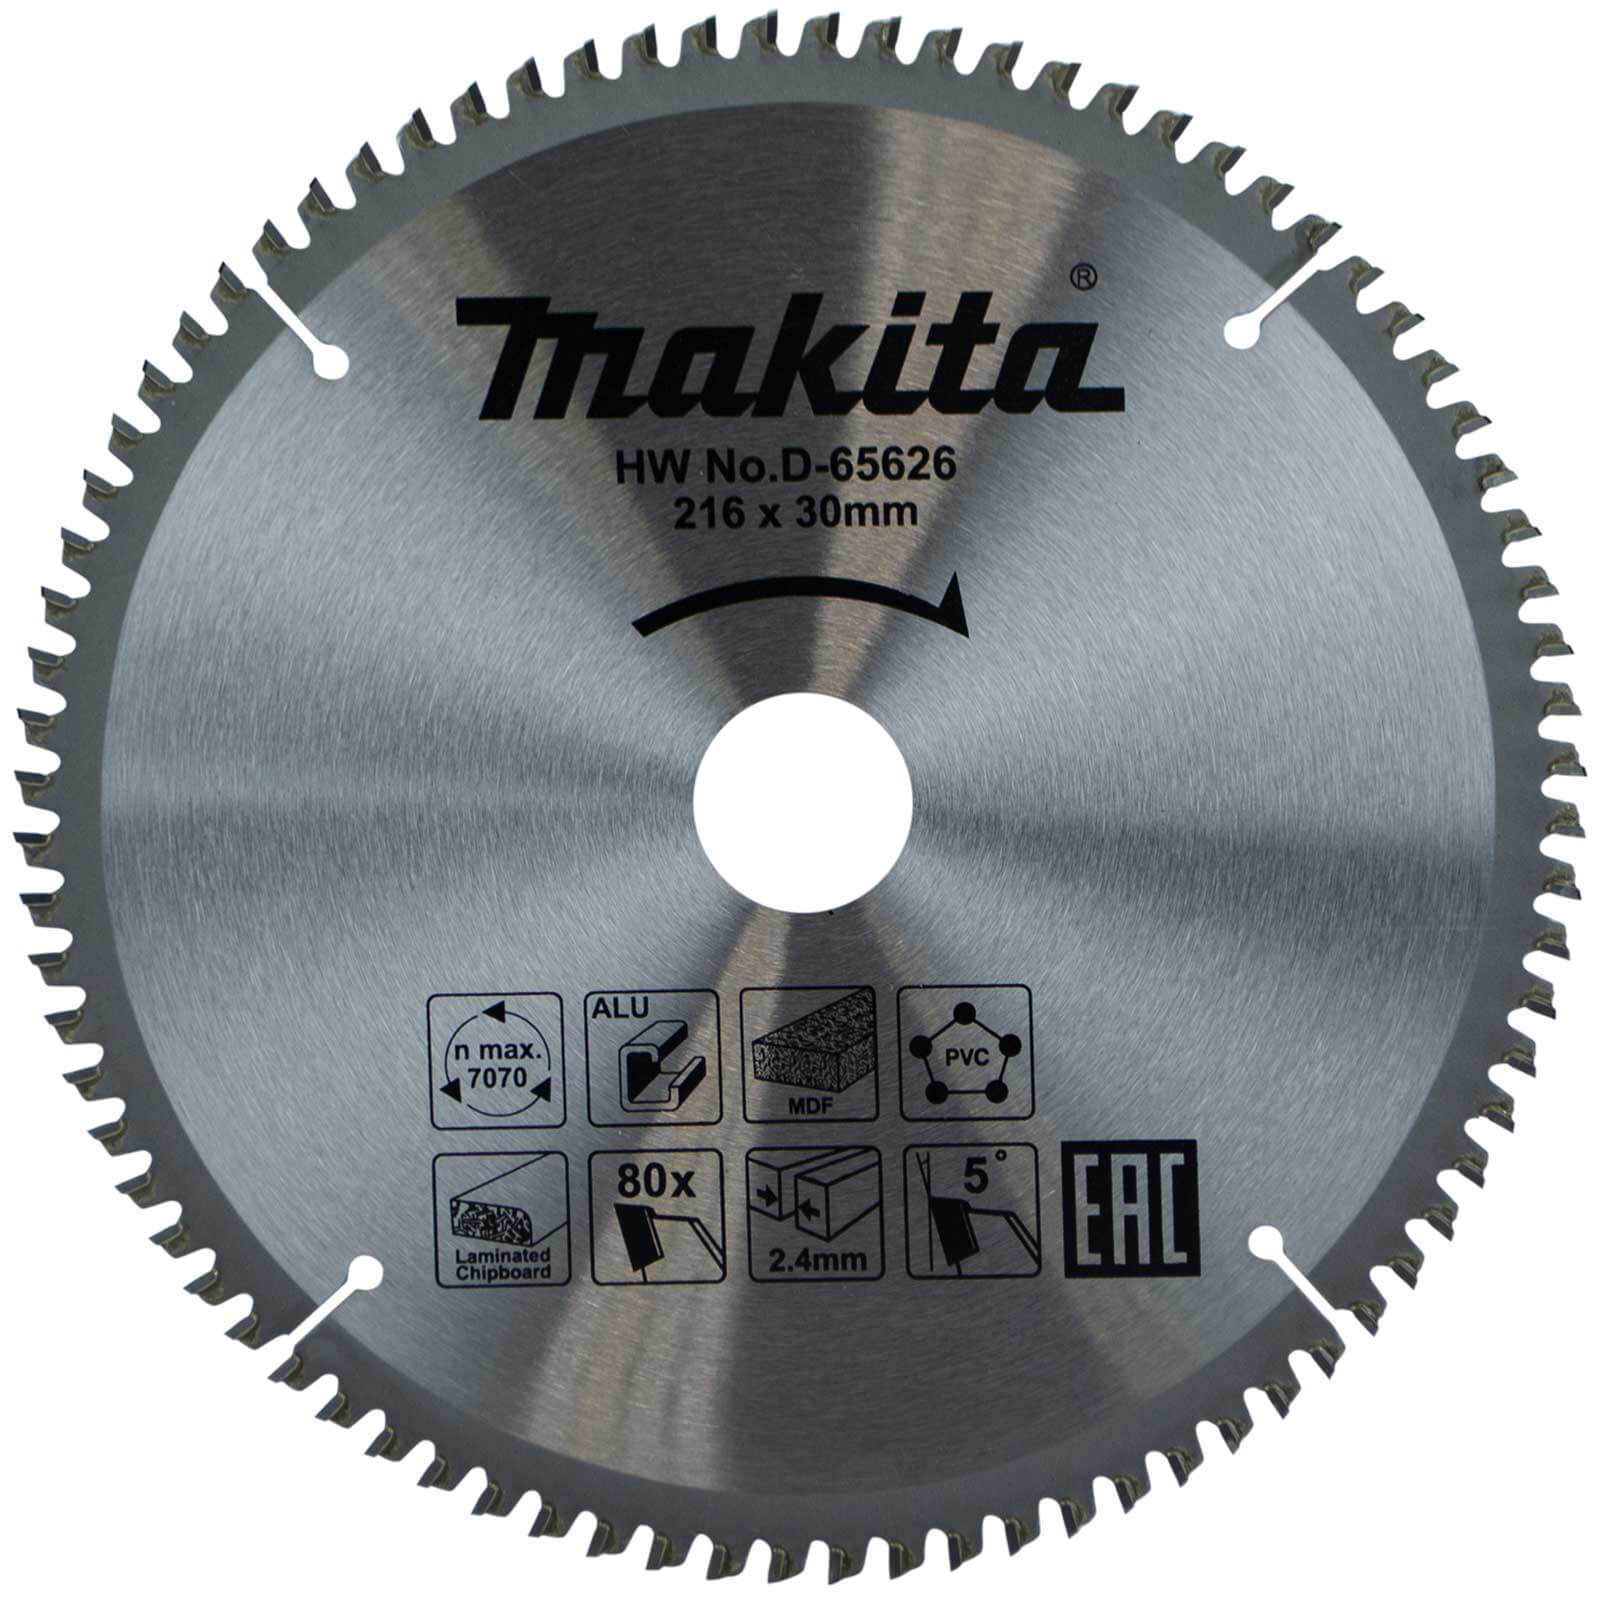 Photo of Makita Multi Purpose Circular Saw Blade 216mm 80t 30mm